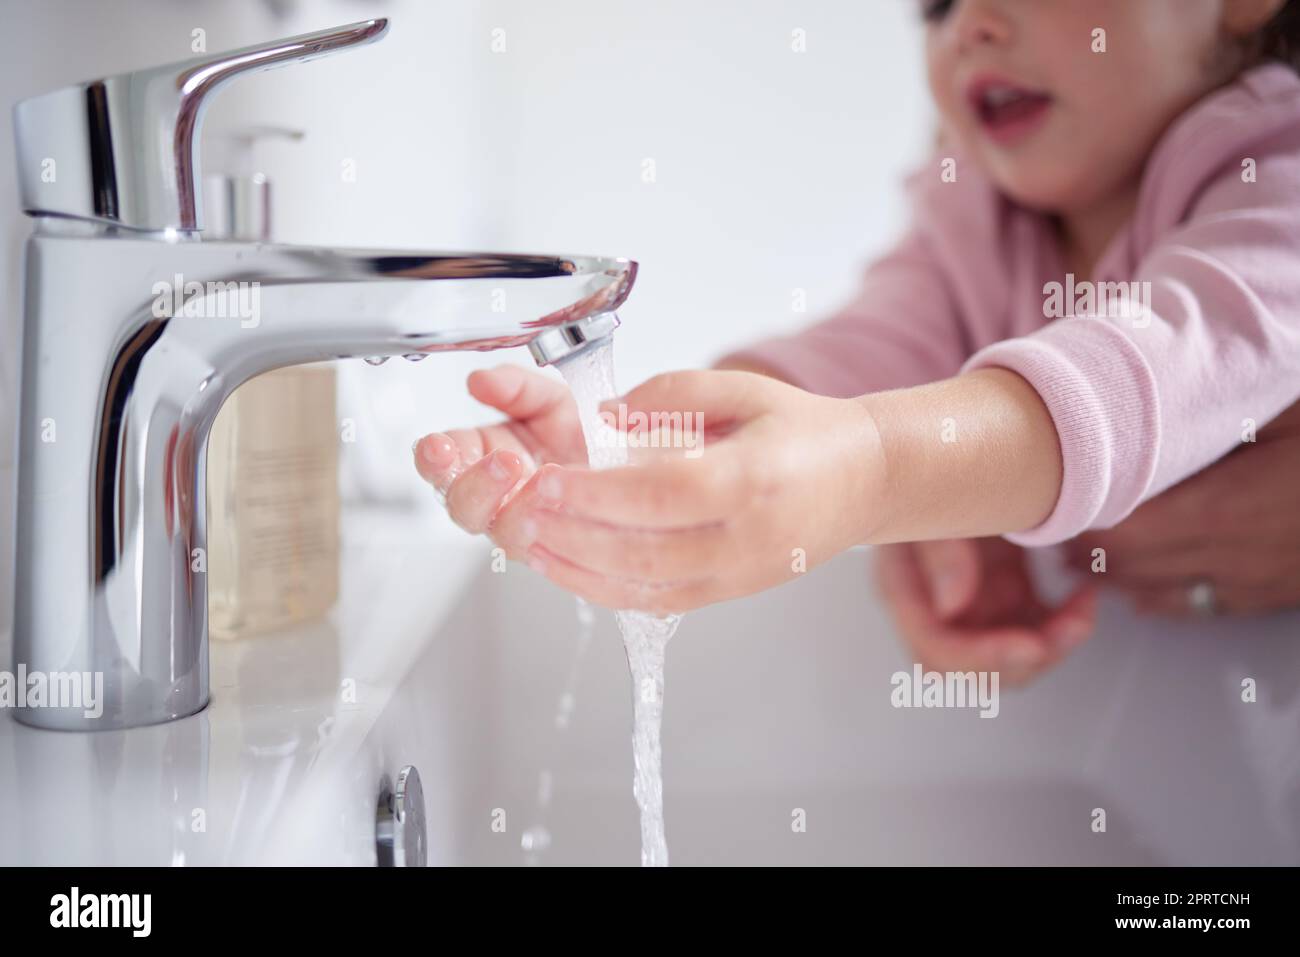 Mains, eau et nettoyage avec une fille et sa mère se lavant les mains sous un robinet pour l'hygiène et l'assainissement pendant le covid dans leur maison. Enfants, santé et toilettage dans la salle de bains d'une maison Banque D'Images